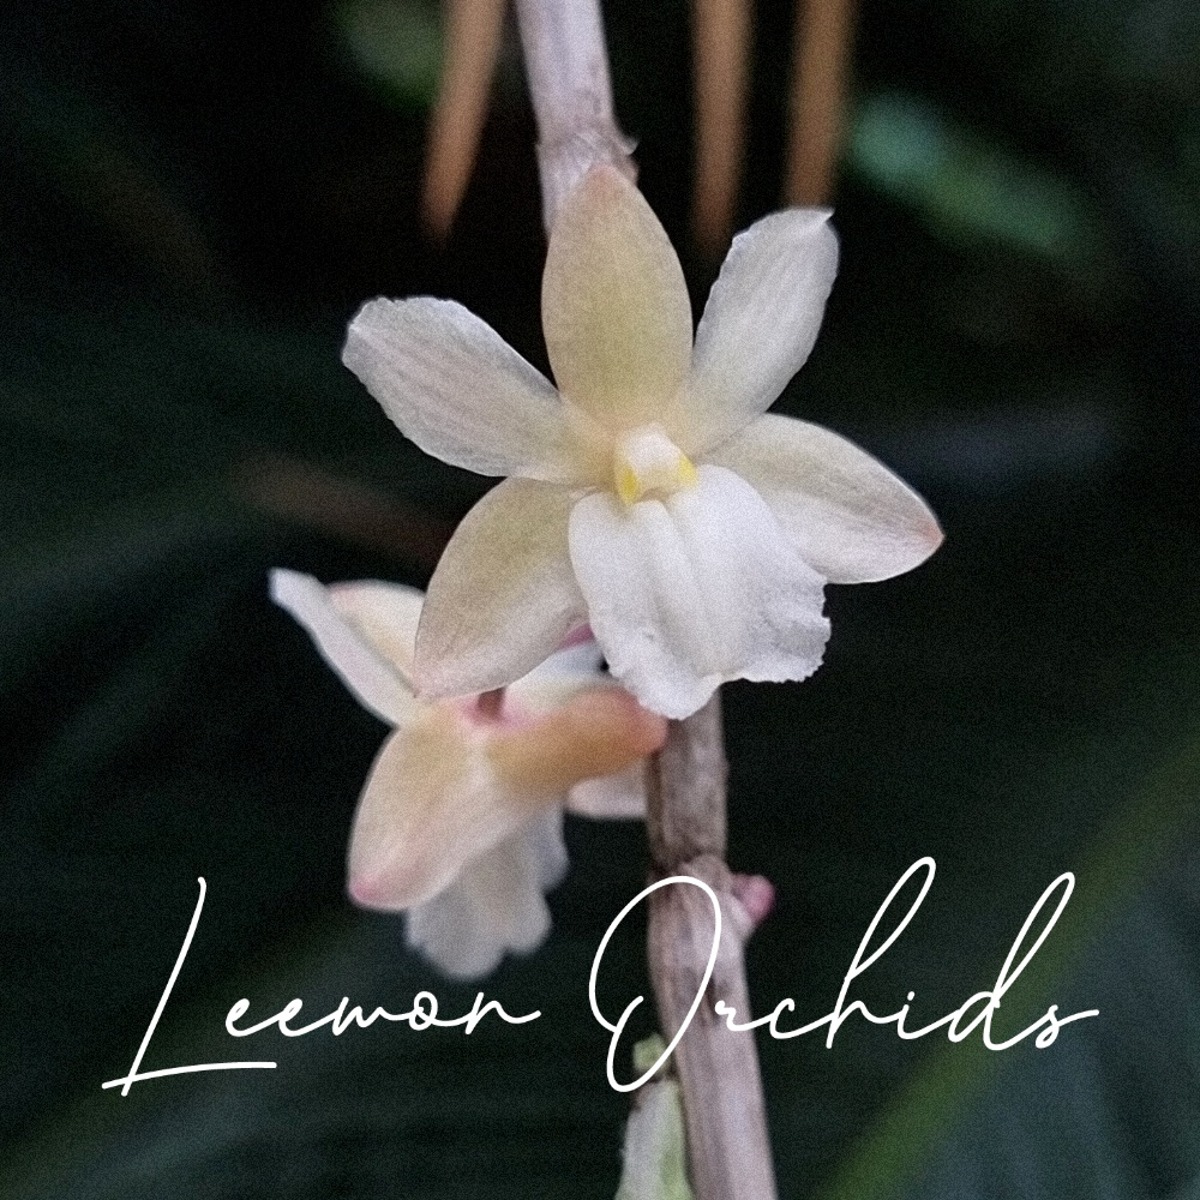 덴드로비움 씬에어리엄 Dendrobium cinereum (온라인 한정재고: 1)